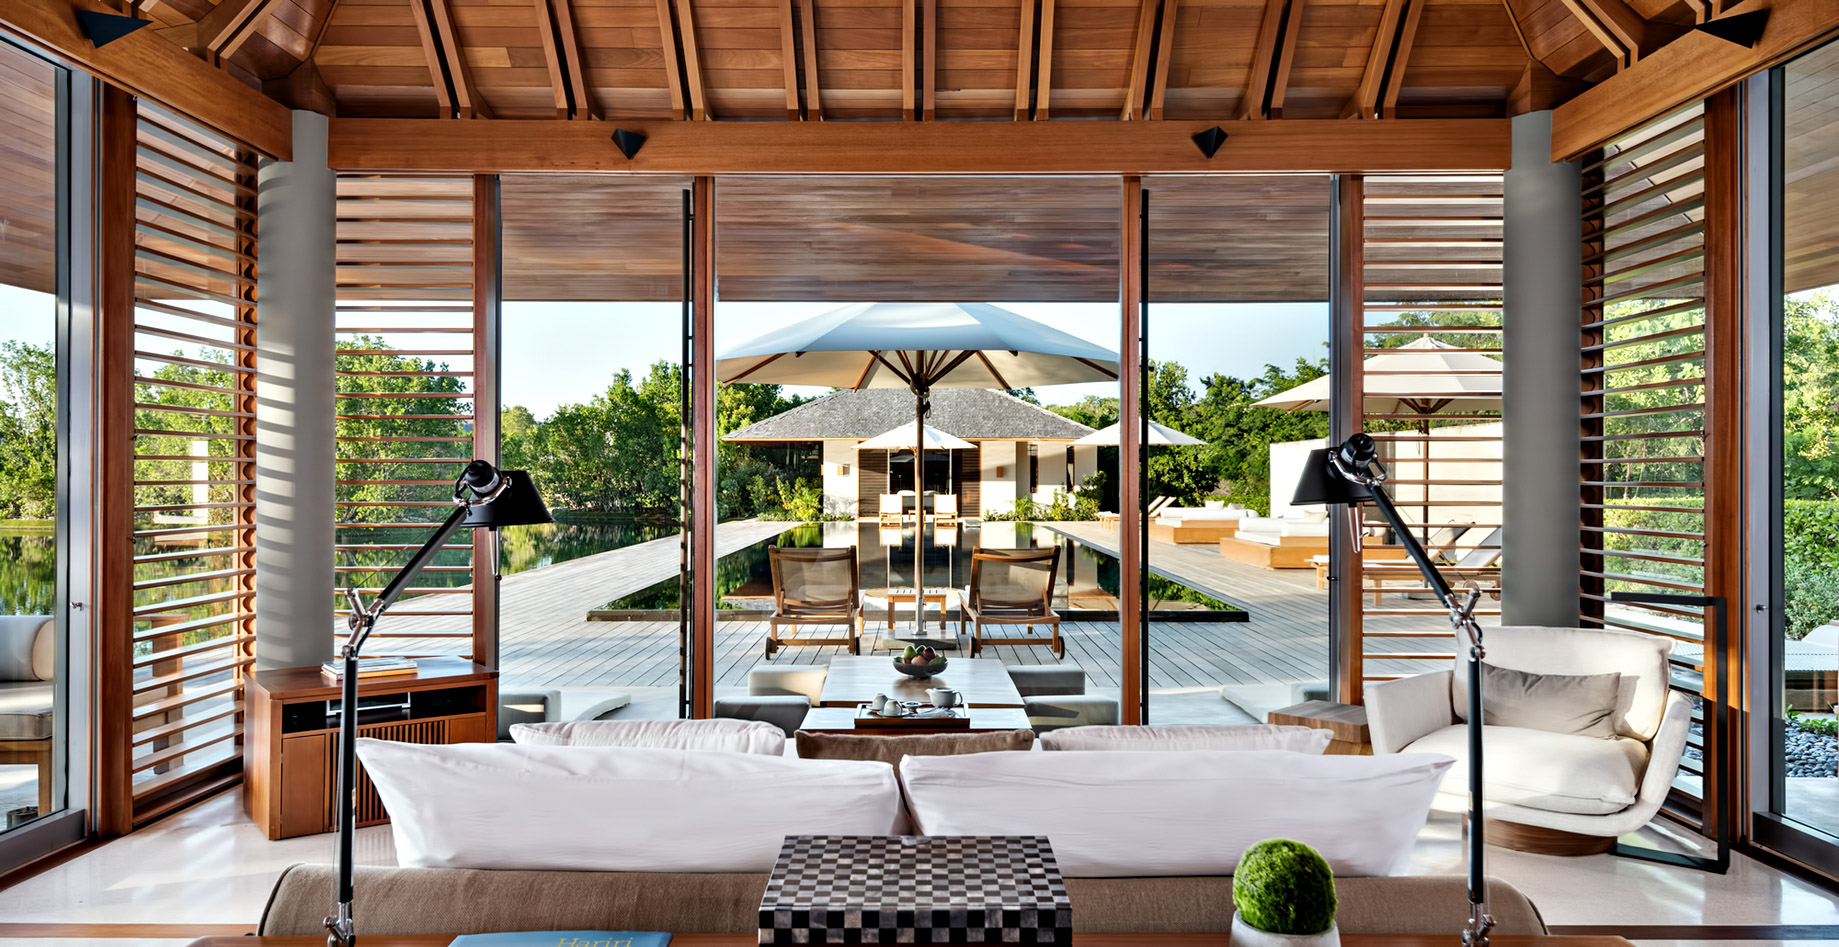 Amanyara Resort – Providenciales, Turks and Caicos Islands – Villa Bedroom Pool View